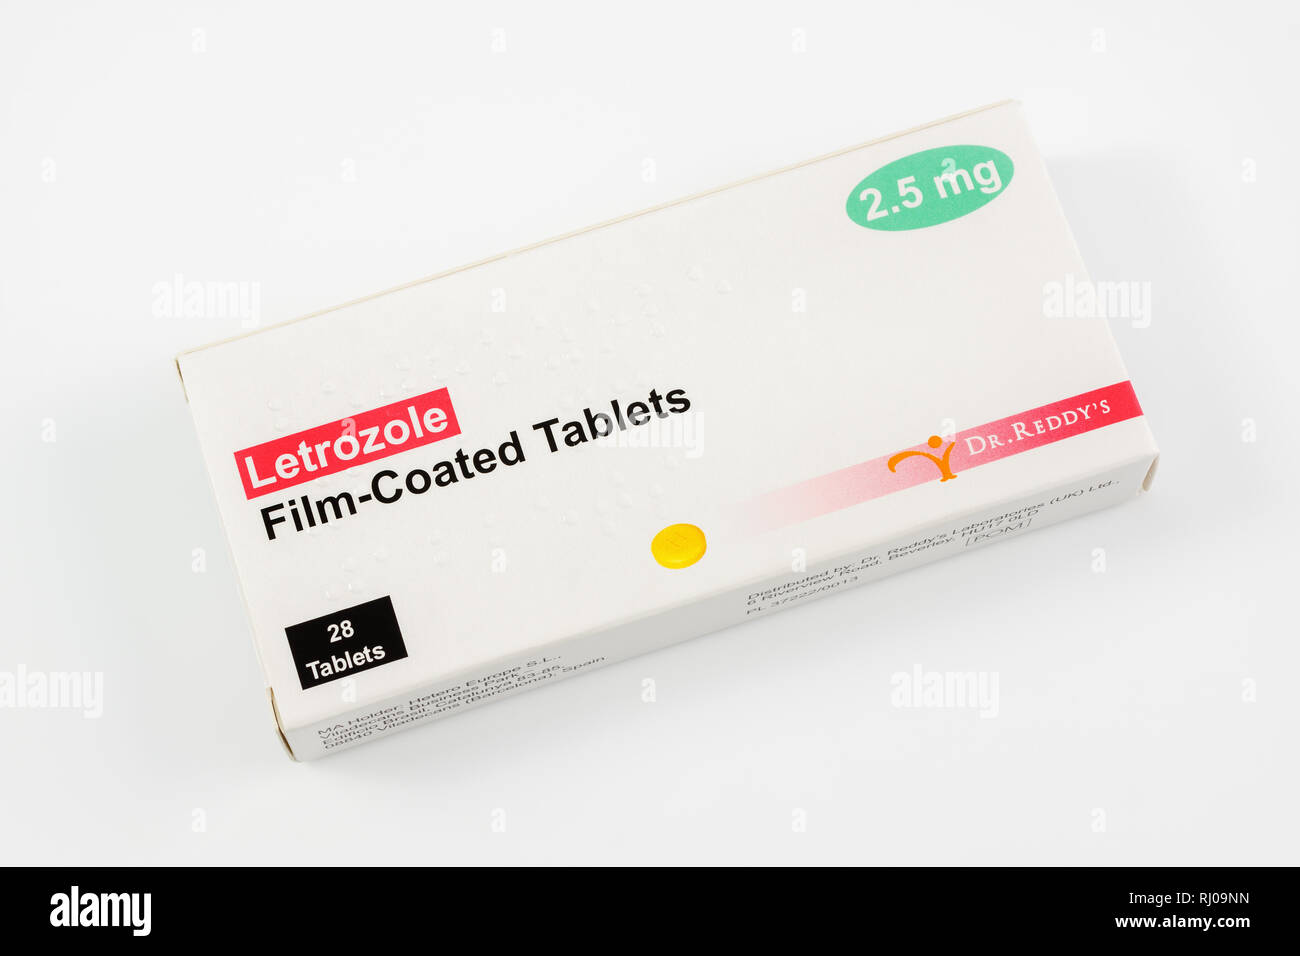 Letrozole noto anche come Femara un inibitore di aromatasi terapia ormonale farmaco usato per trattare il cancro della mammella in donne in post-menopausa Foto Stock